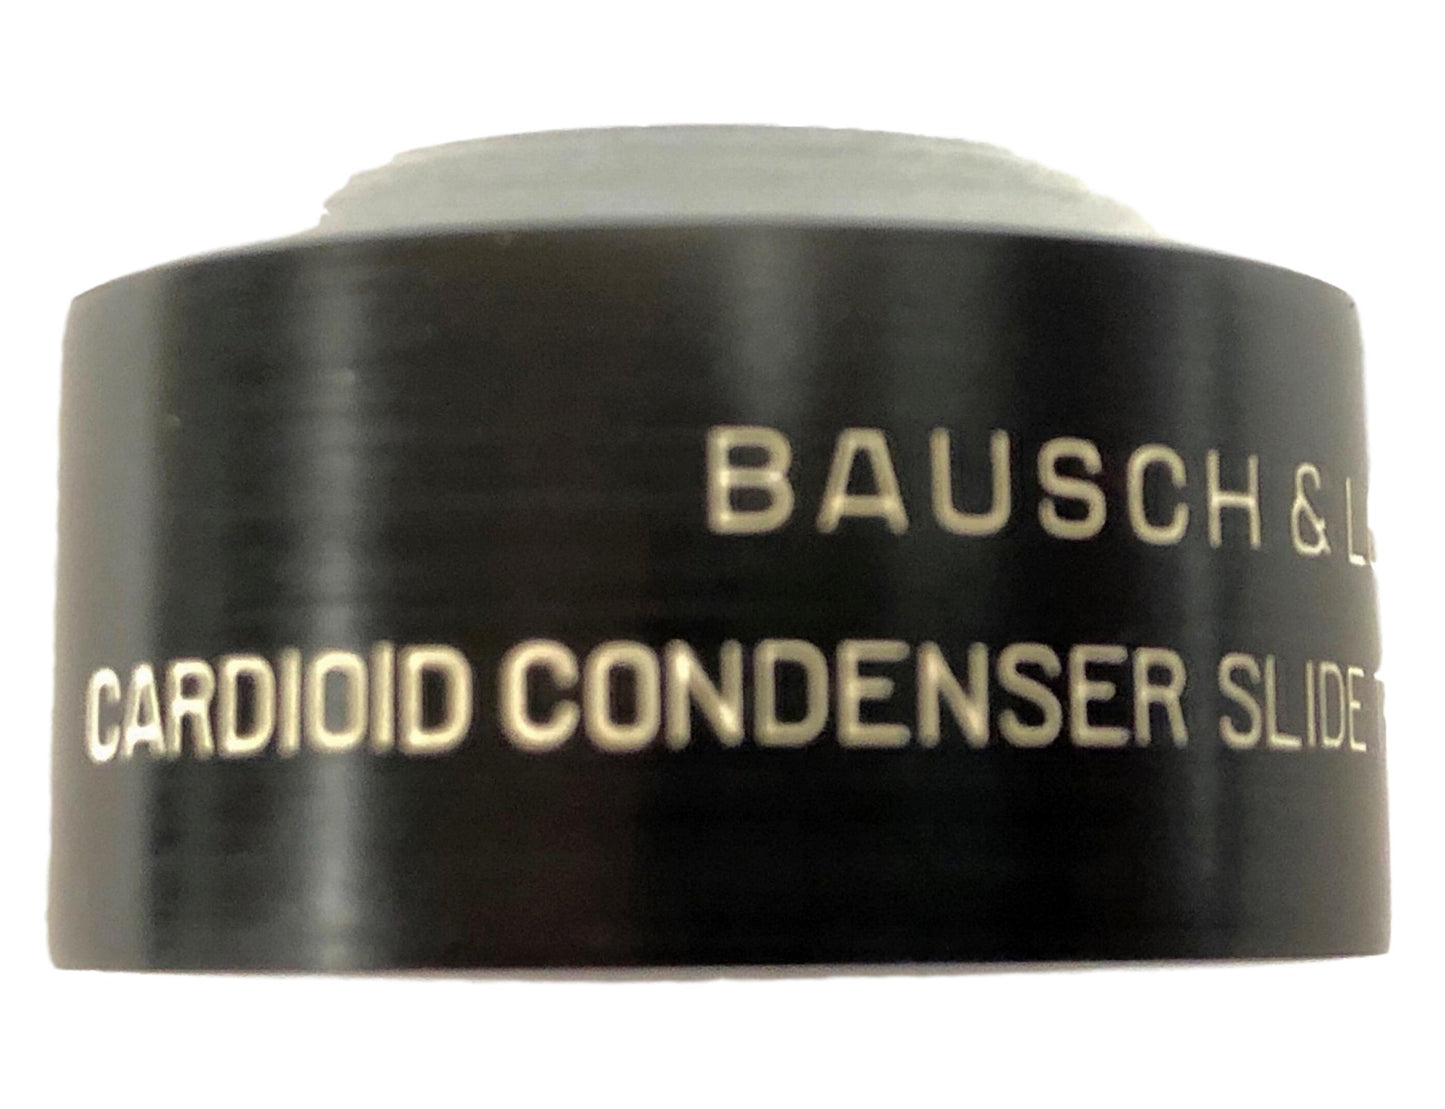 Baucsh & Lomb Balplan Cardioid Condenser